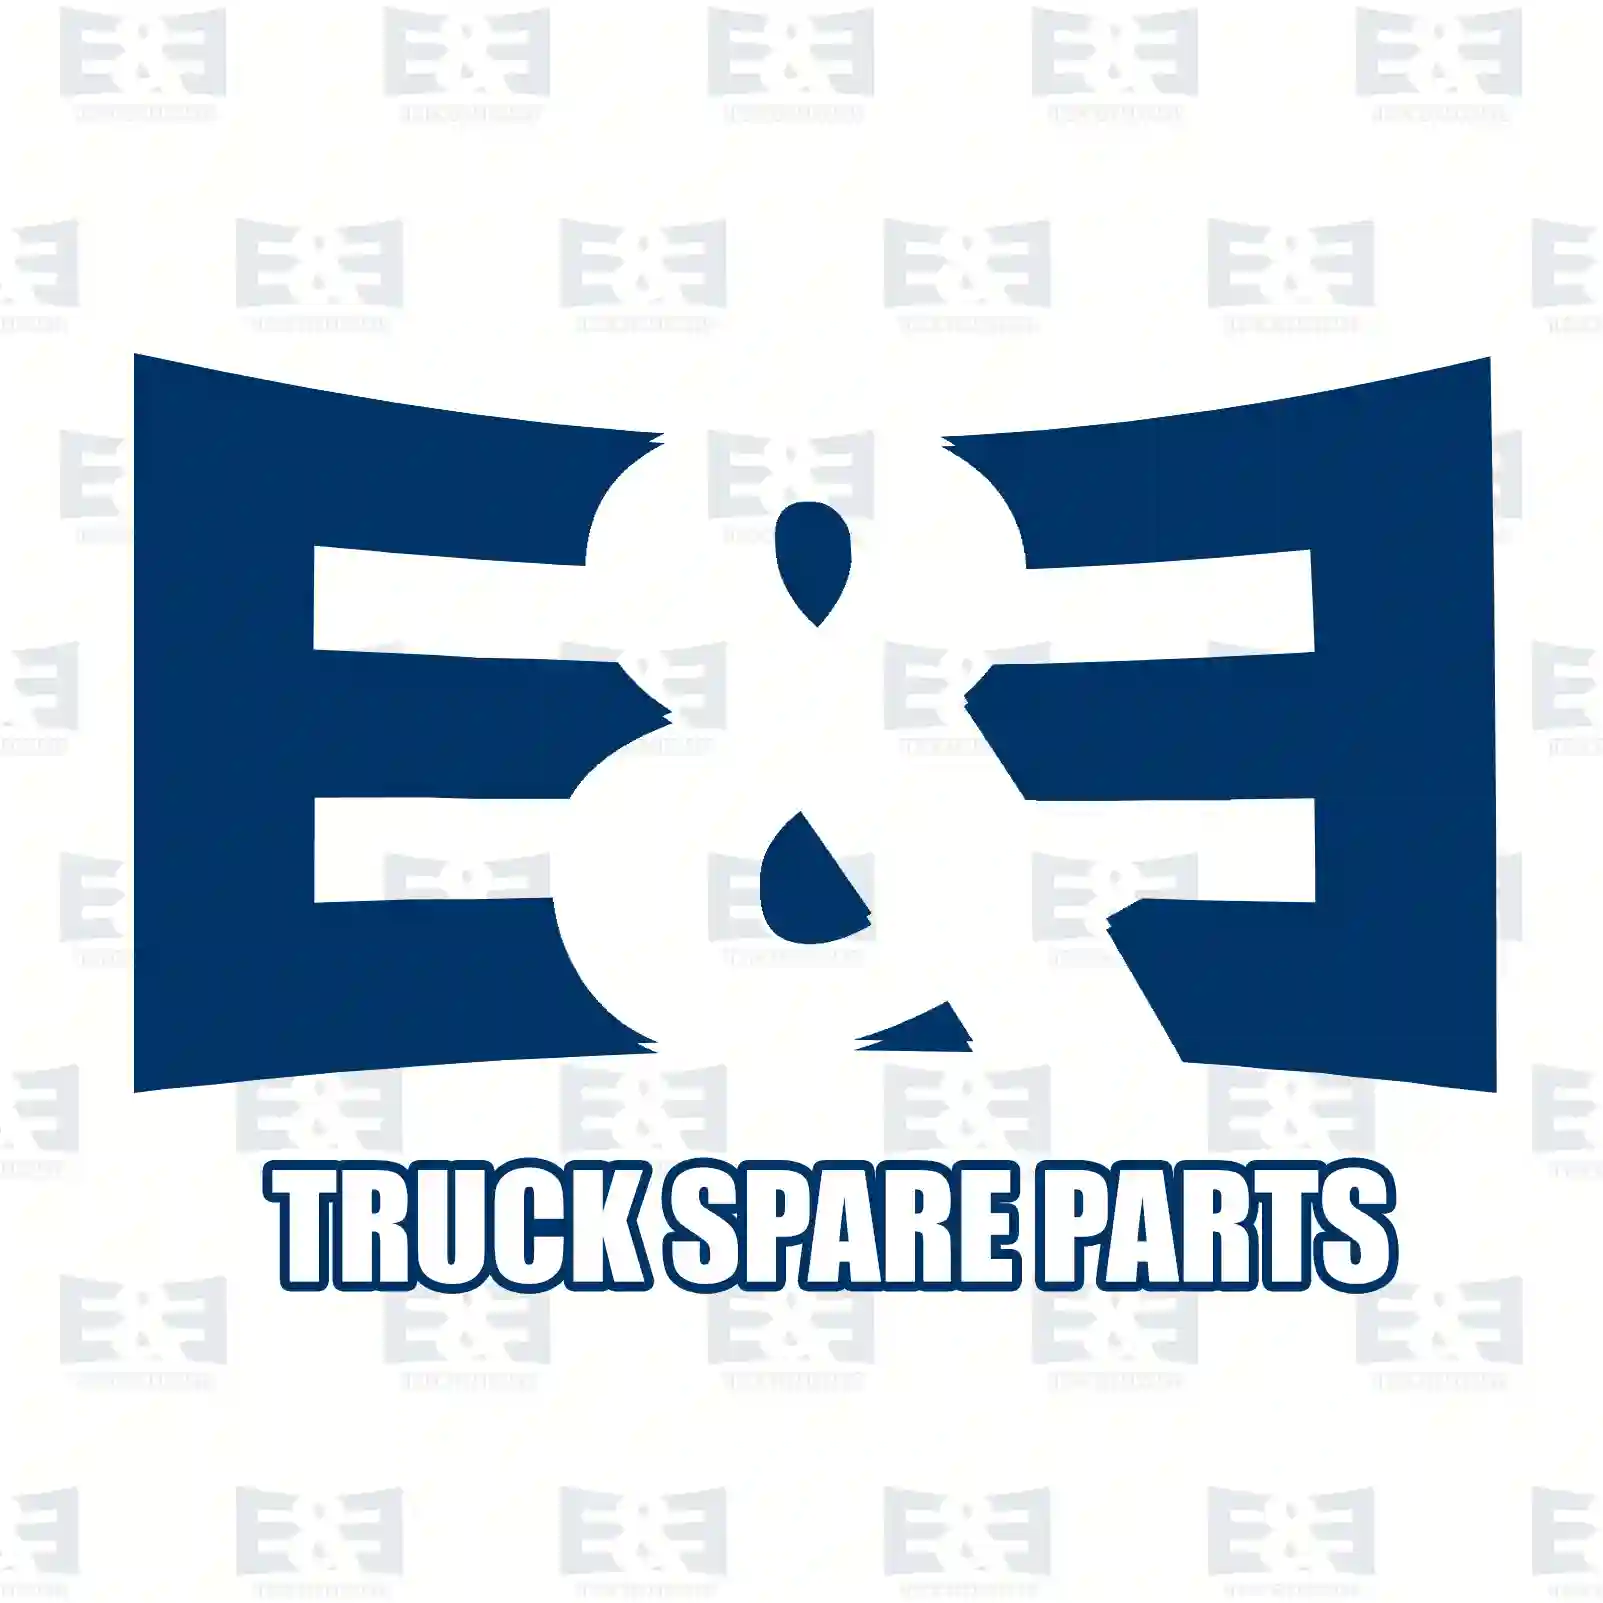 Ball joint, 2E2277127, 1768962S, ZG40130-0008 ||  2E2277127 E&E Truck Spare Parts | Truck Spare Parts, Auotomotive Spare Parts Ball joint, 2E2277127, 1768962S, ZG40130-0008 ||  2E2277127 E&E Truck Spare Parts | Truck Spare Parts, Auotomotive Spare Parts